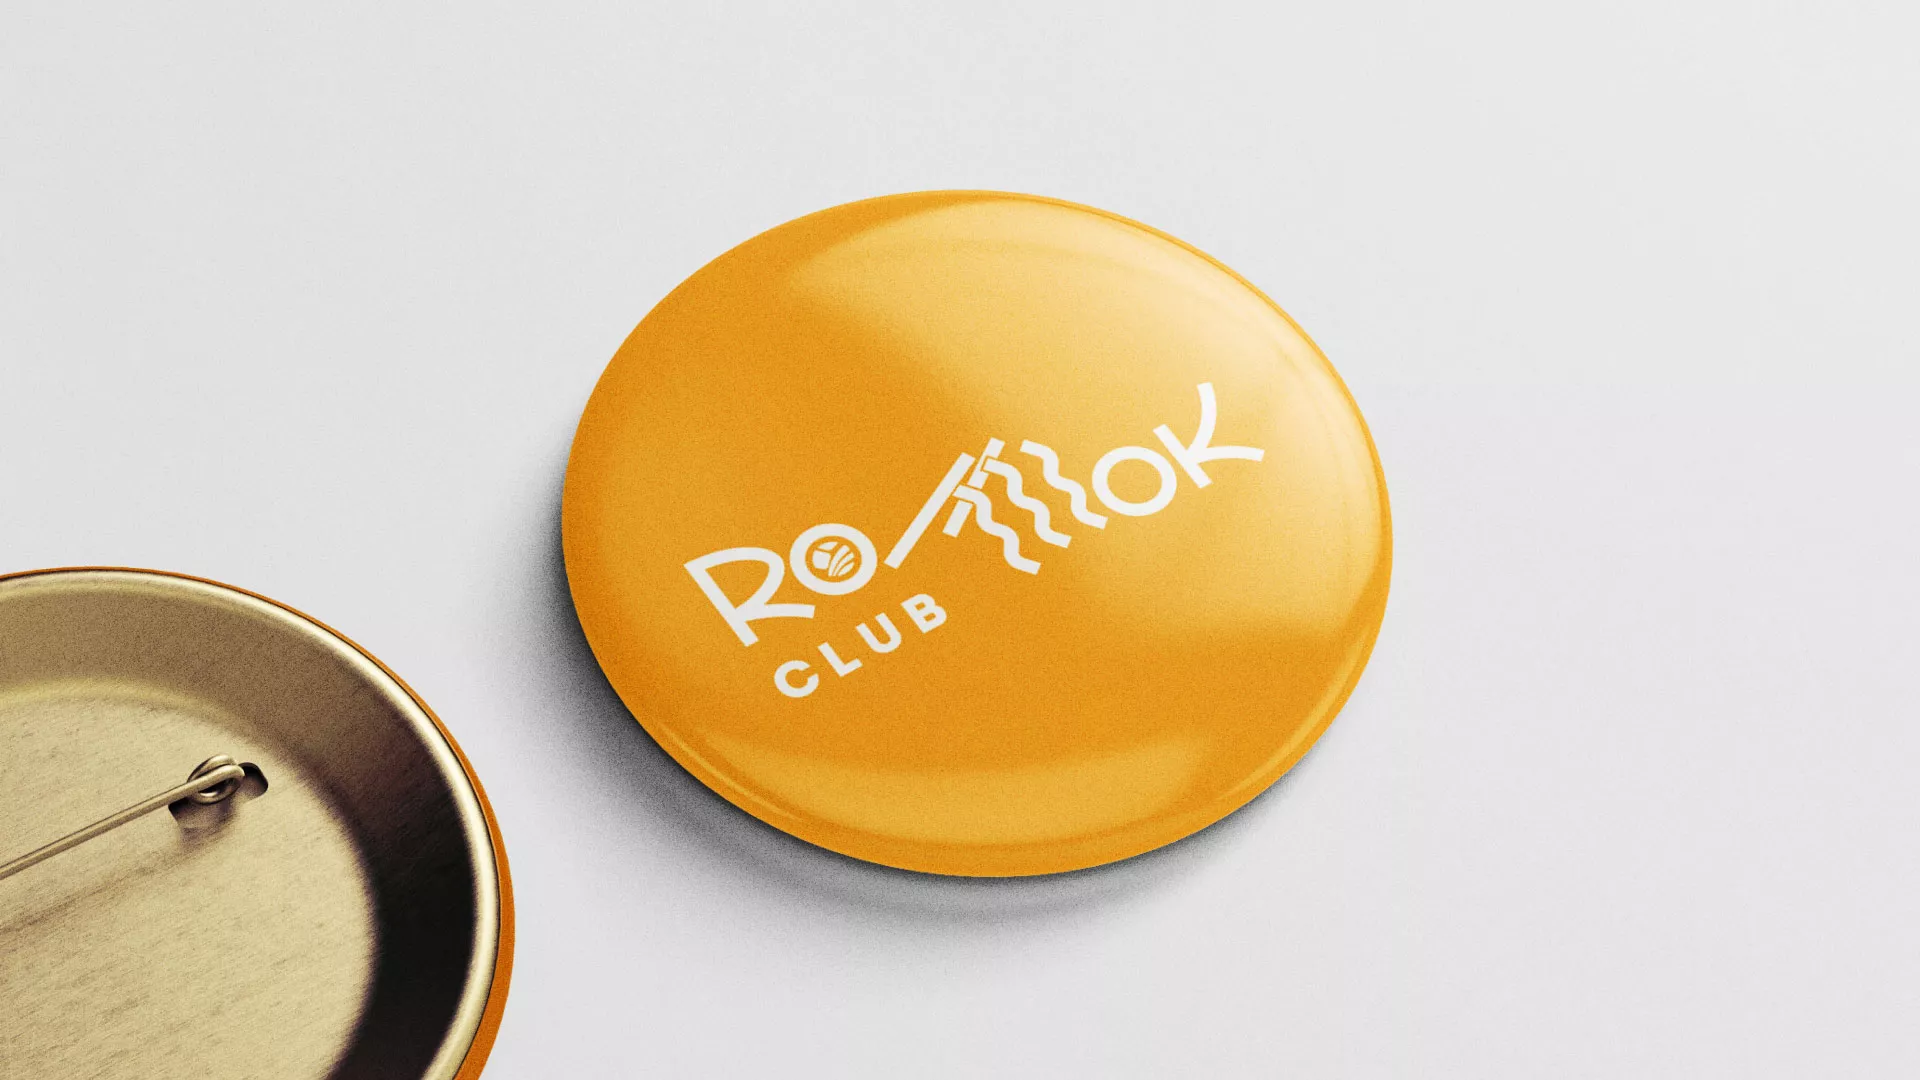 Создание логотипа суши-бара «Roll Wok Club» в Шебекино